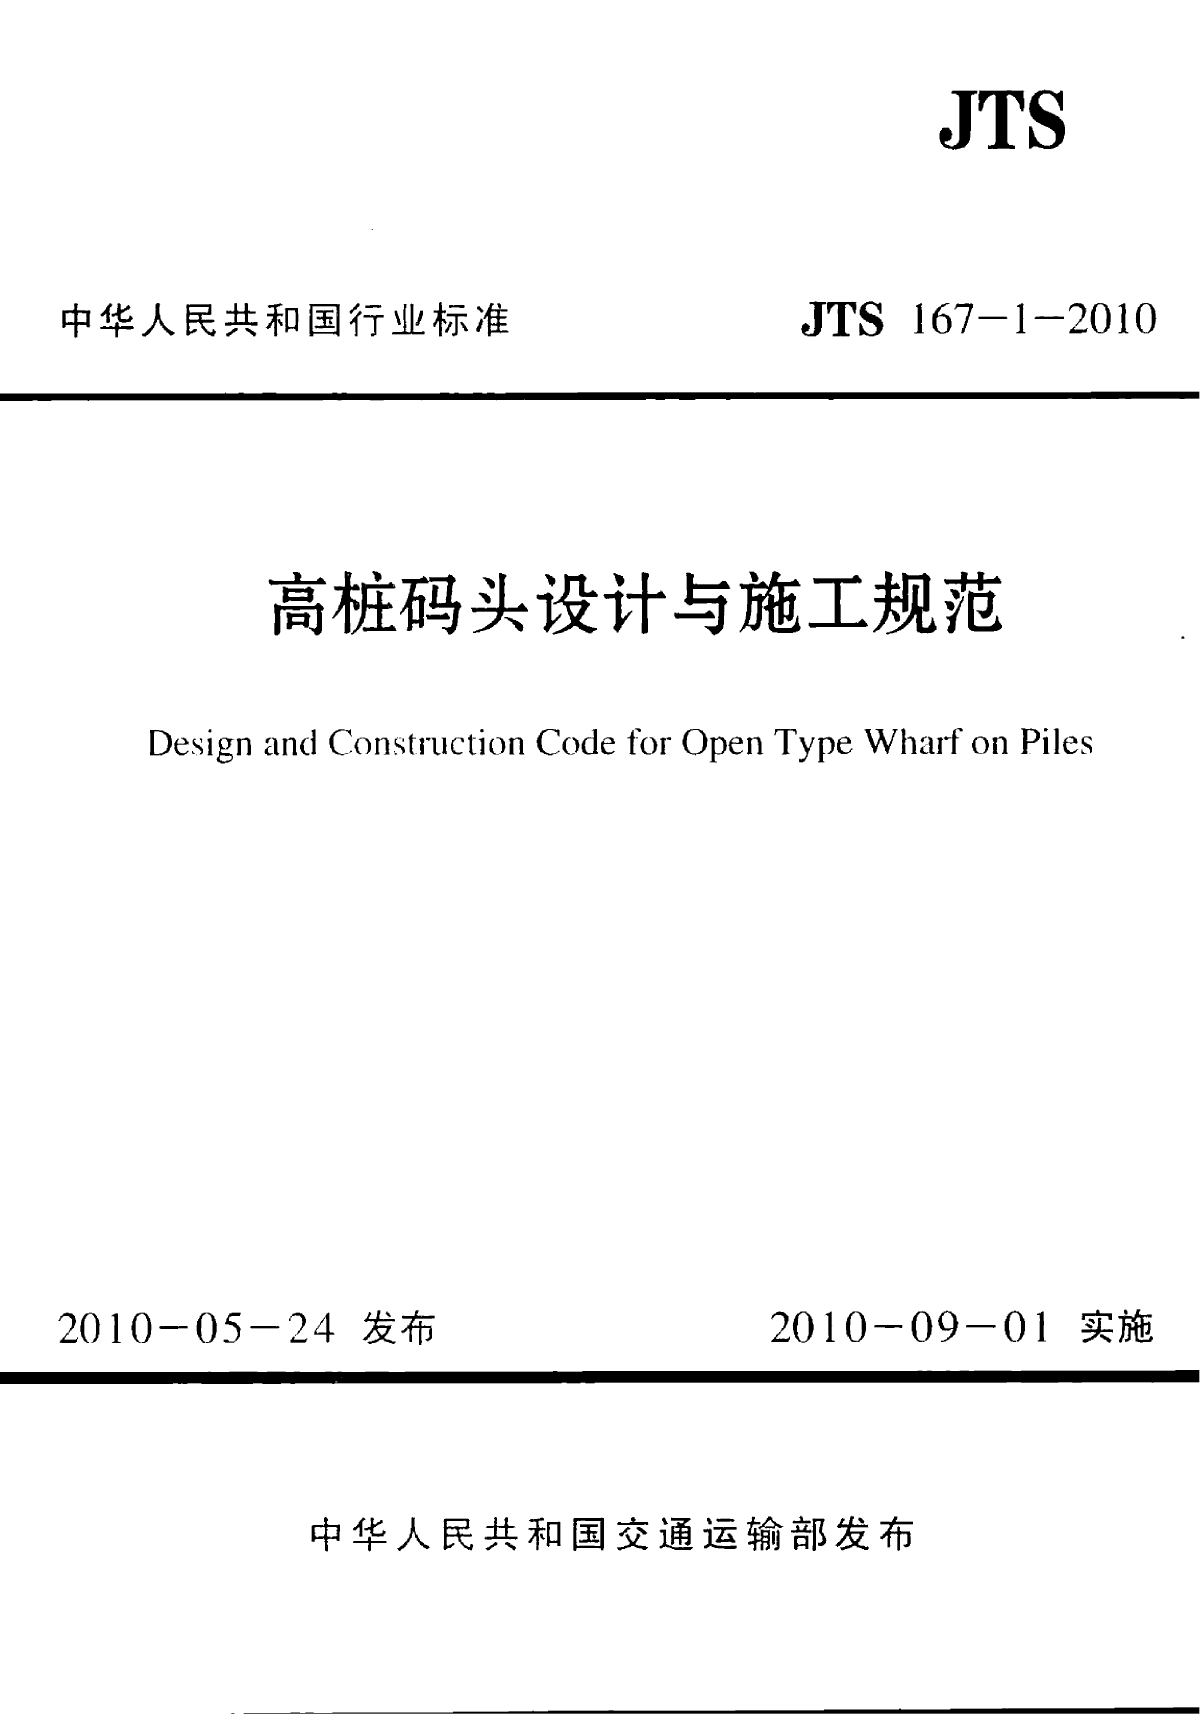 《高桩码头设计与施工规范》(JTS167-1-2010)